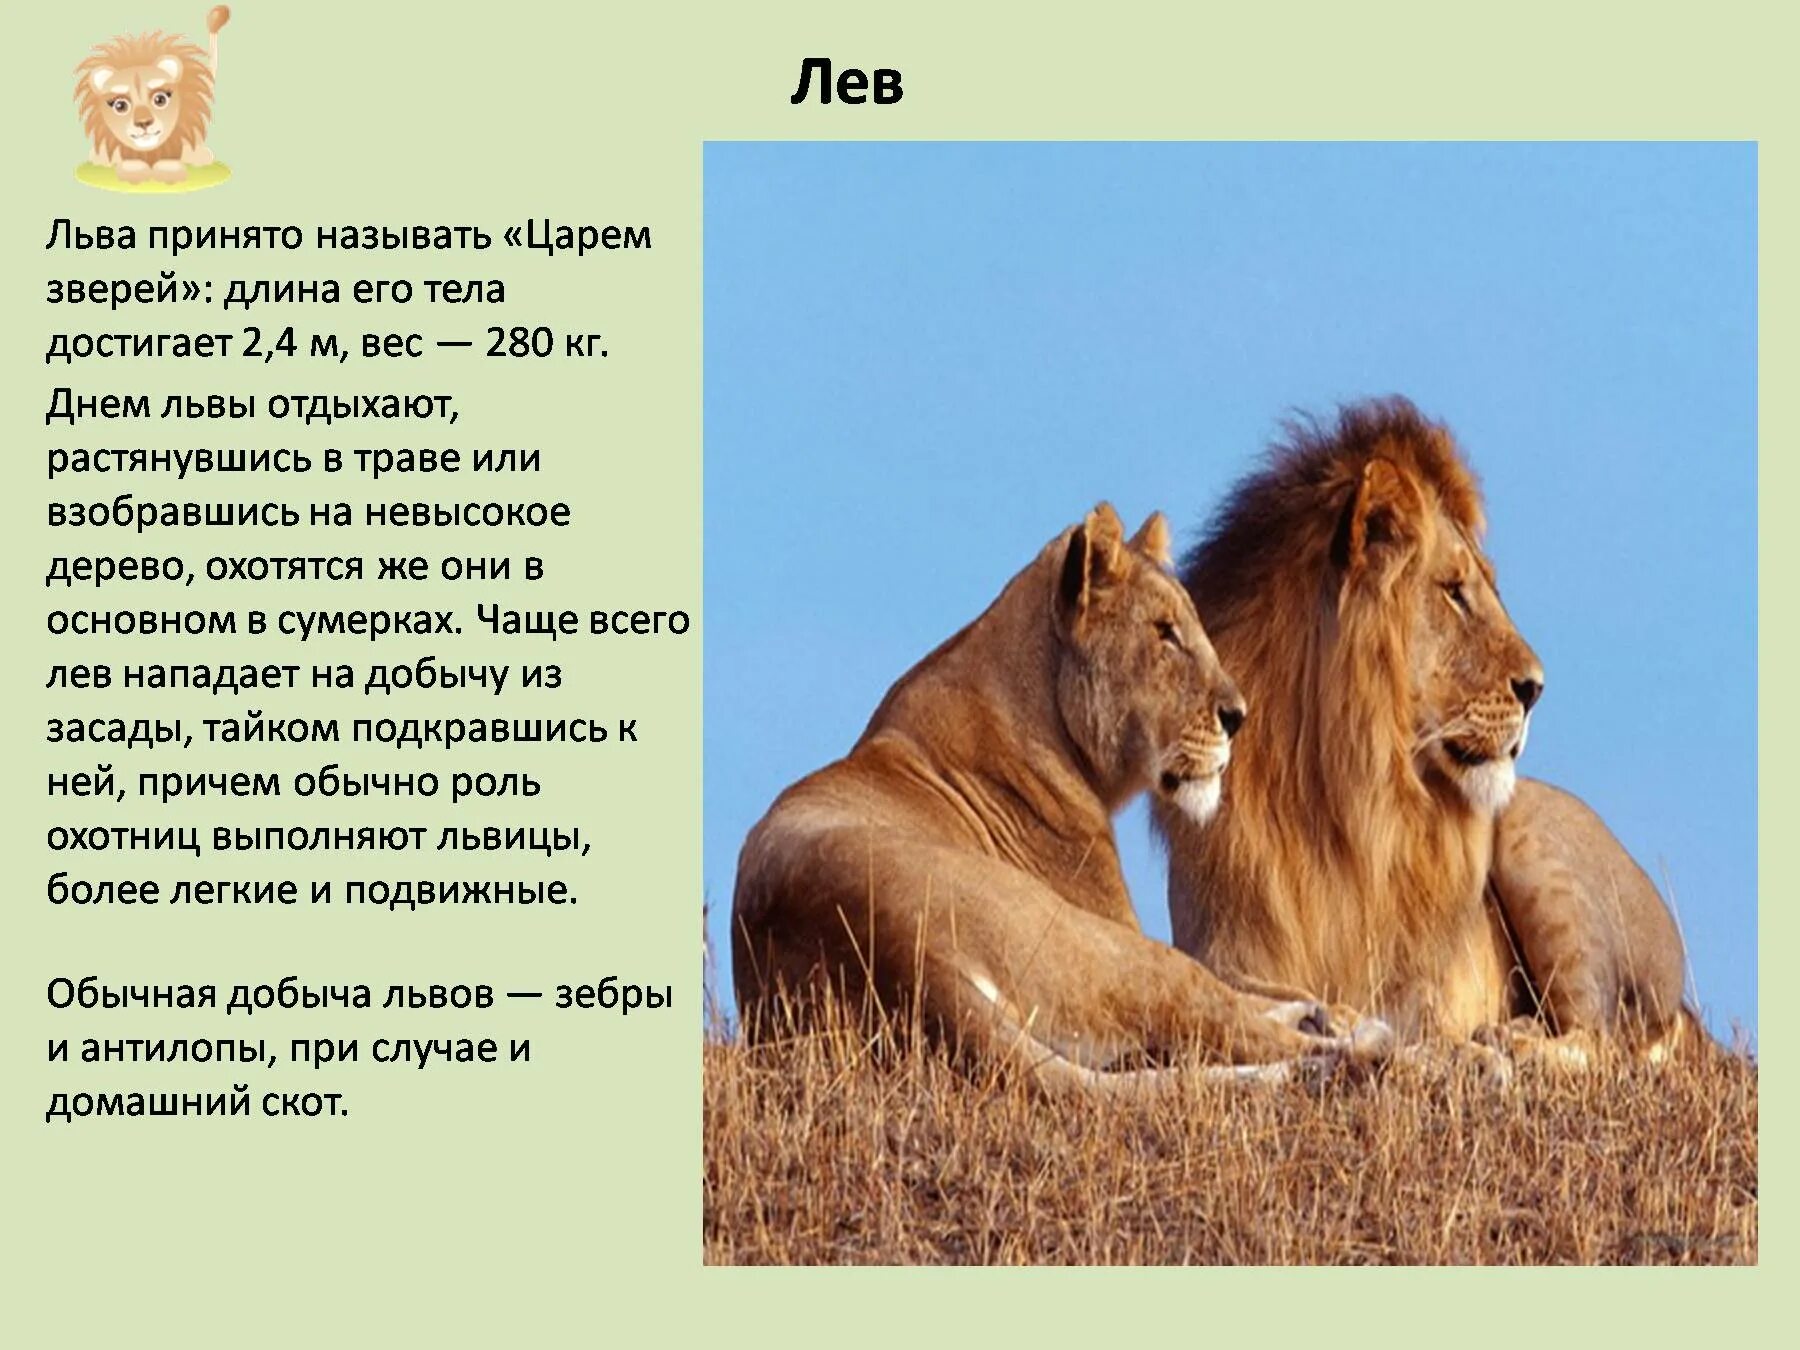 Доклад о животных. Описание Льва. Рассказ про Льва. Лев для презентации.